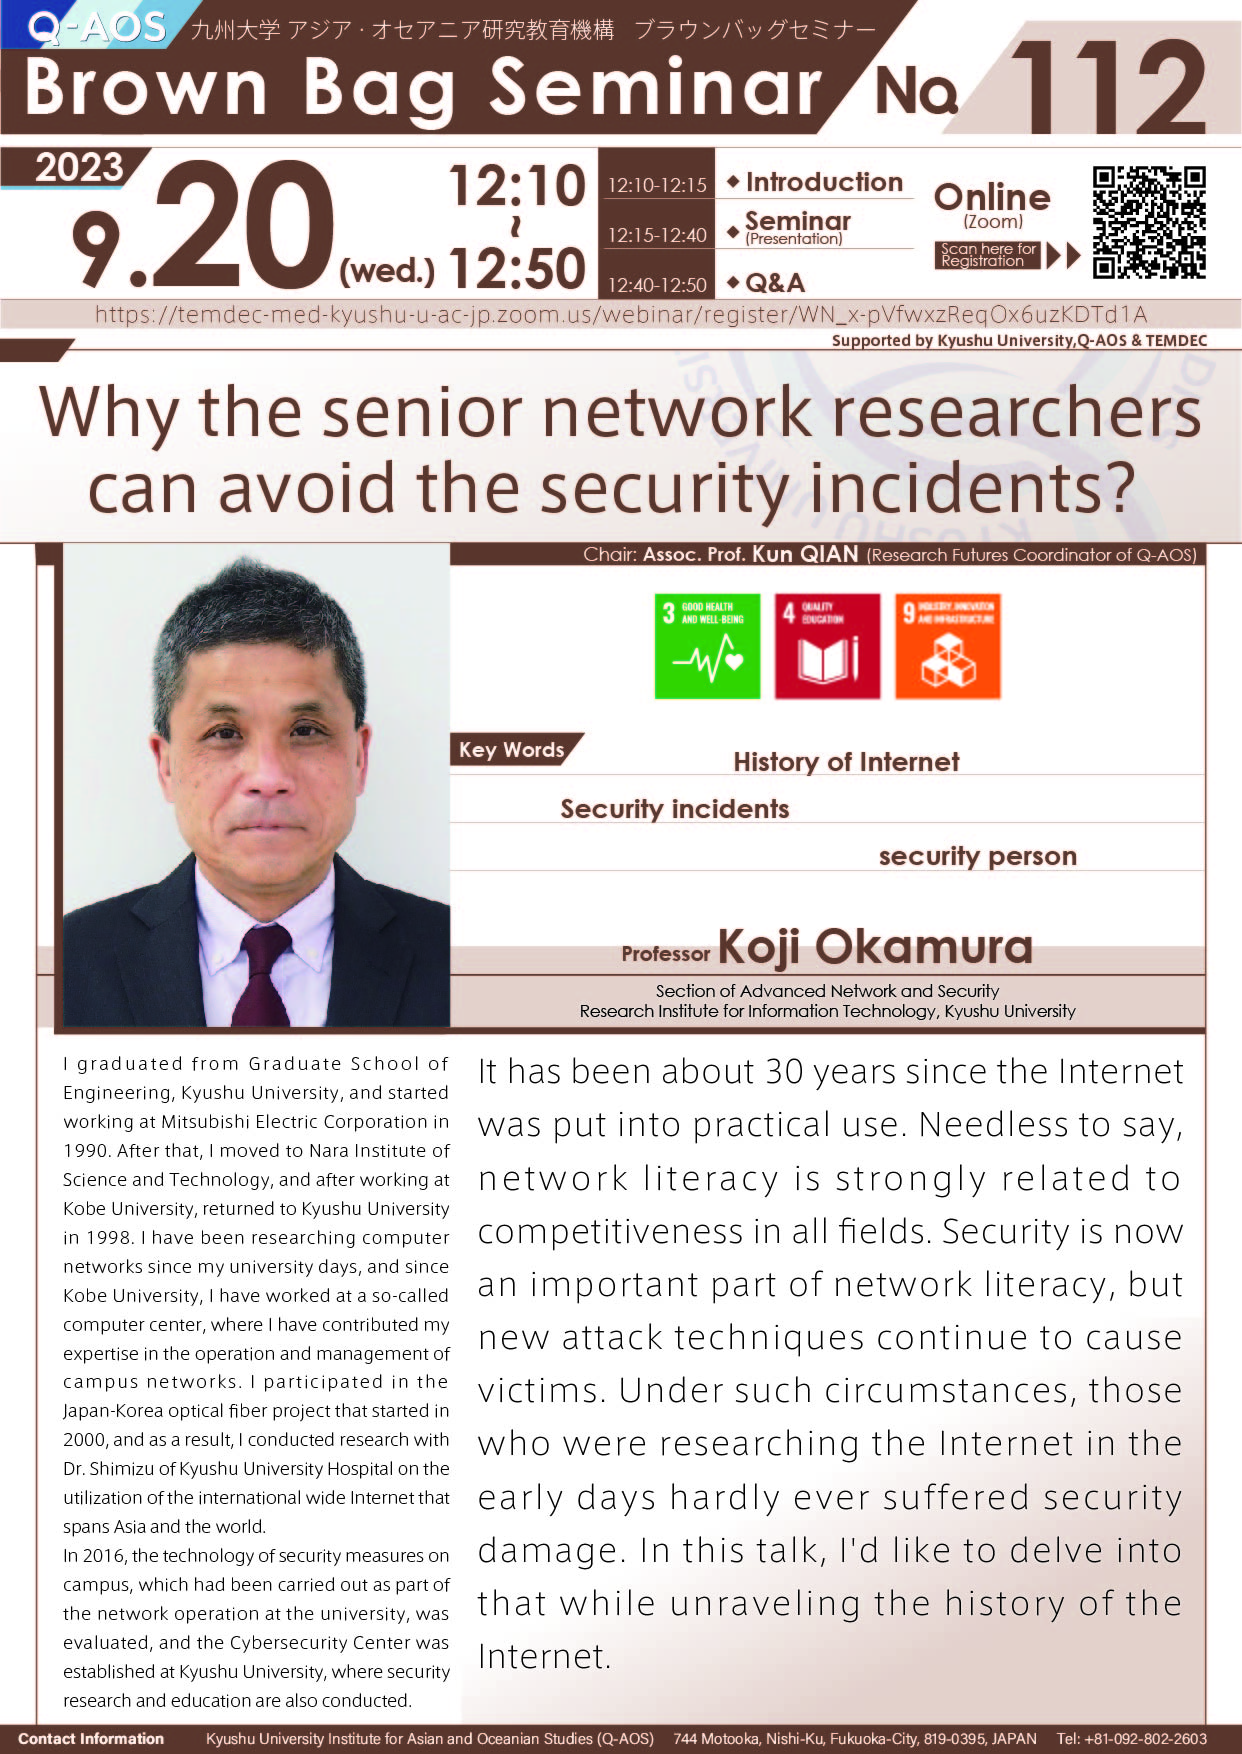 アイキャッチ画像：Q-AOS Brown Bag Seminar Series The 112th Seminar “Why the senior network researchers can avoid the security incidents?”